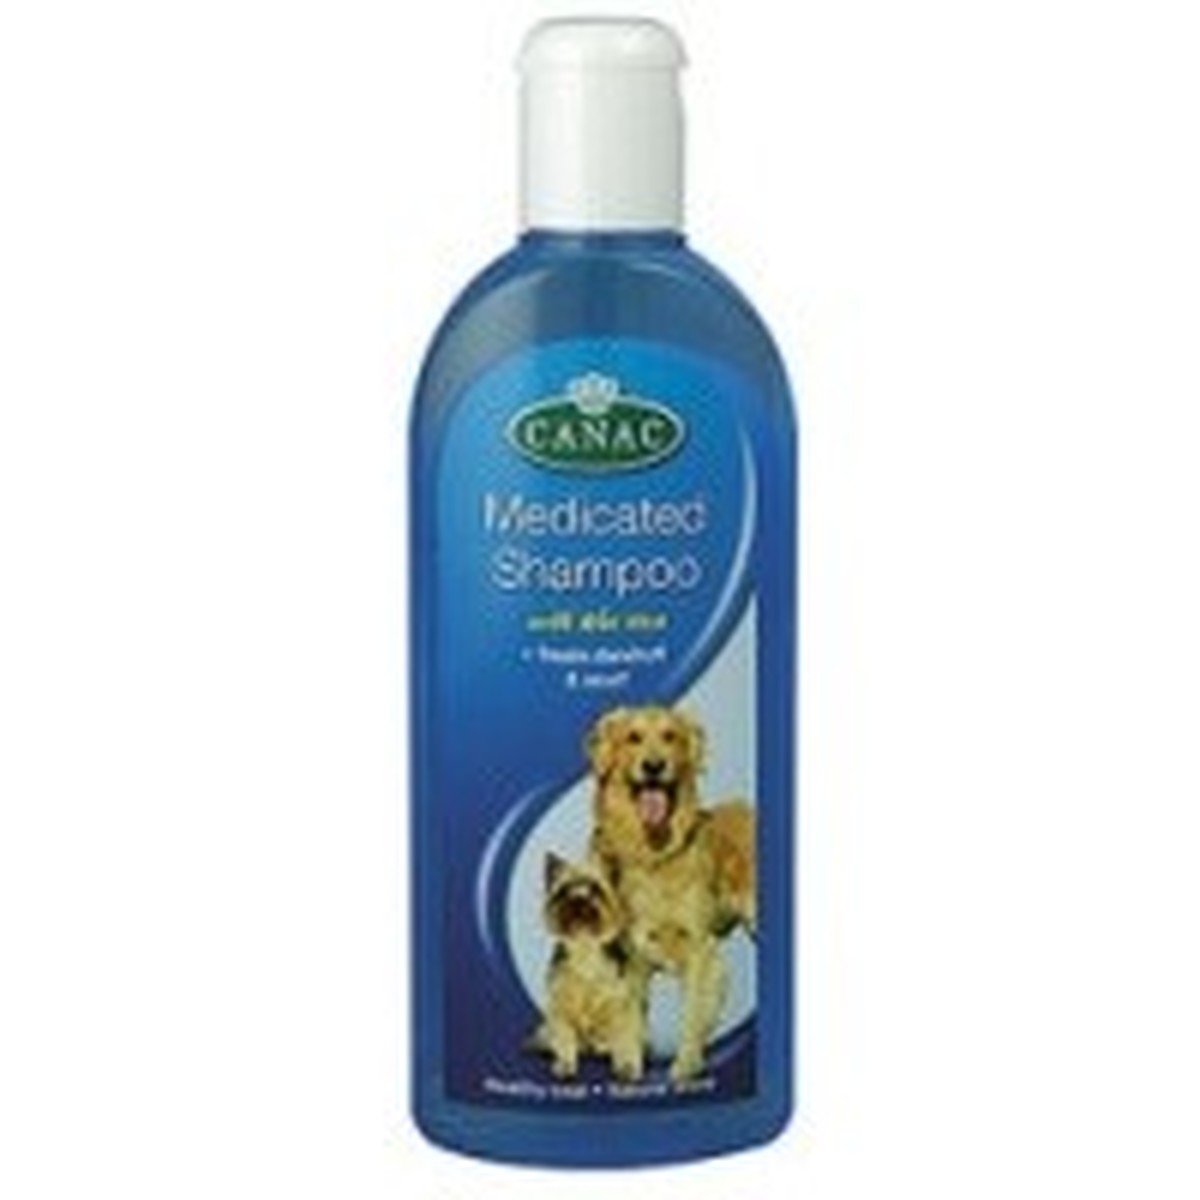 medicated dog shampoo uk